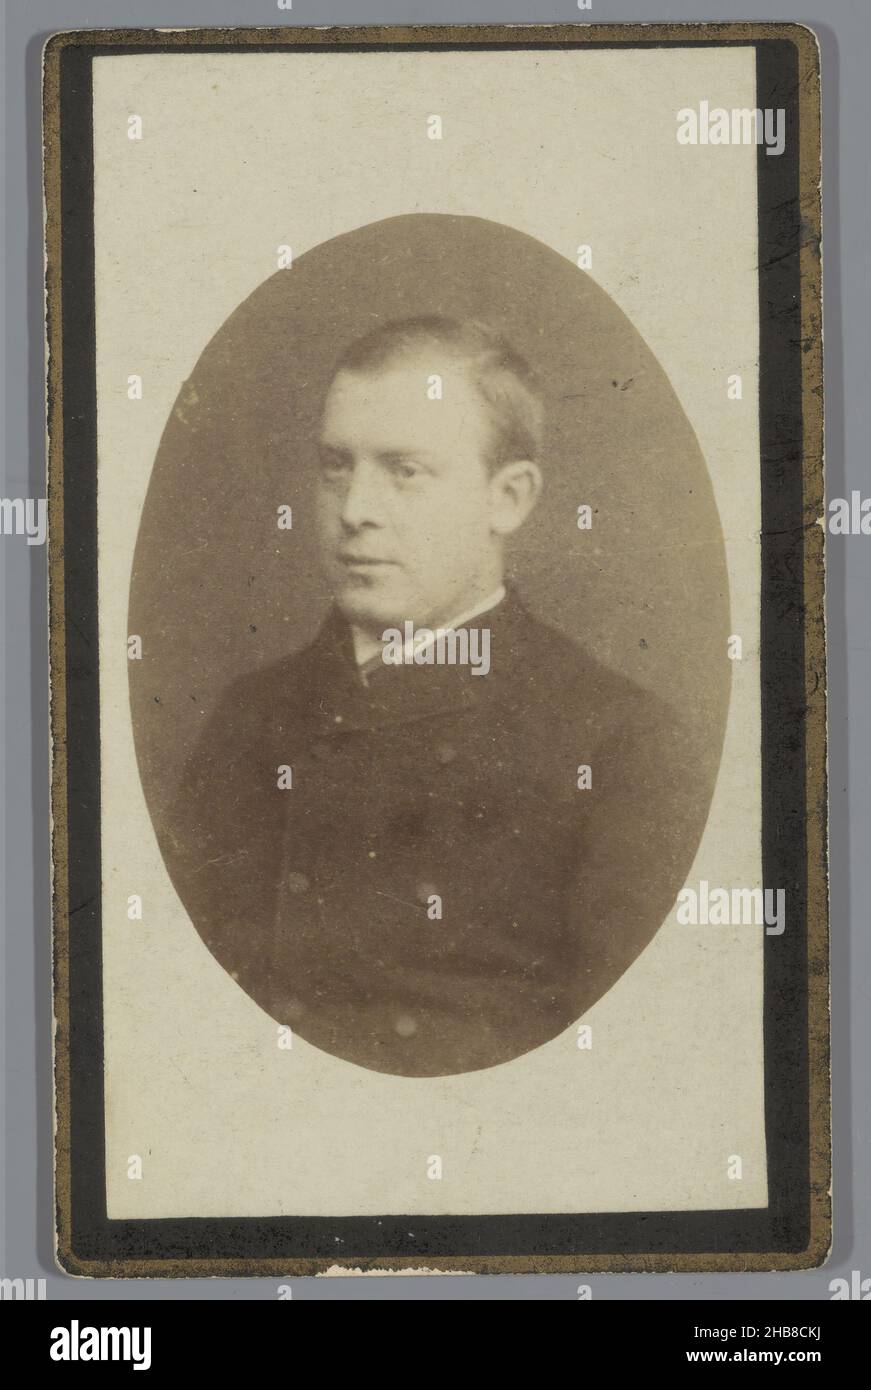 Ritratto di un uomo sconosciuto, anonimo, 1855 - 1885, carta, cartone, stampa albume, altezza 103 mm x larghezza 64 mm Foto Stock